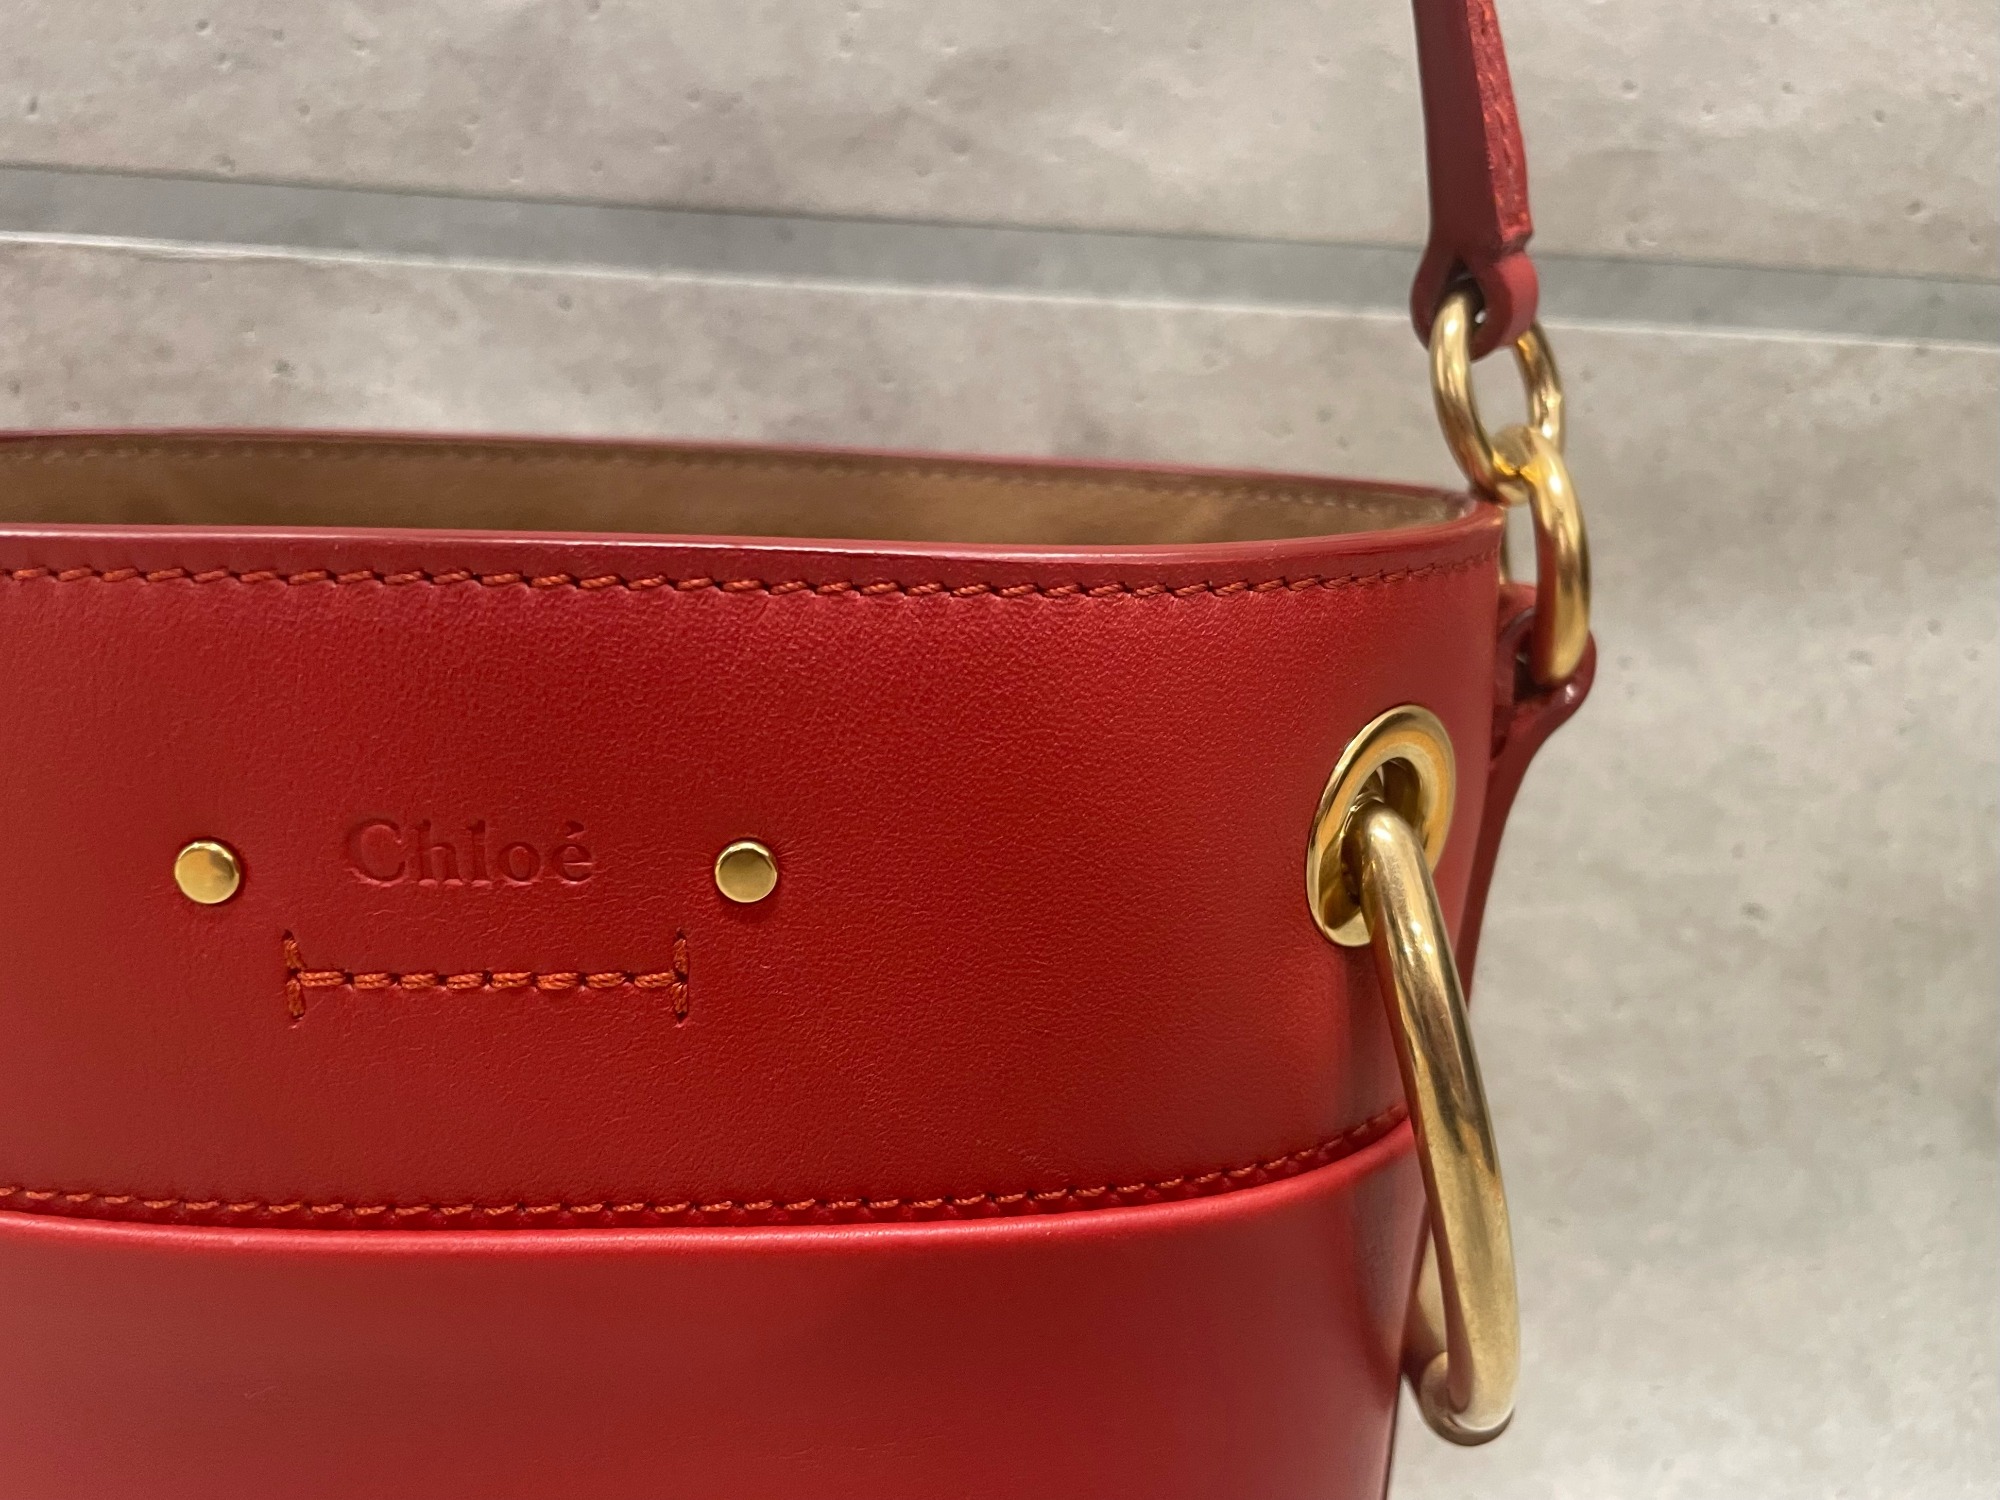 Chloé/クロエの、ロイスモールバケットバッグが買取入荷致しました